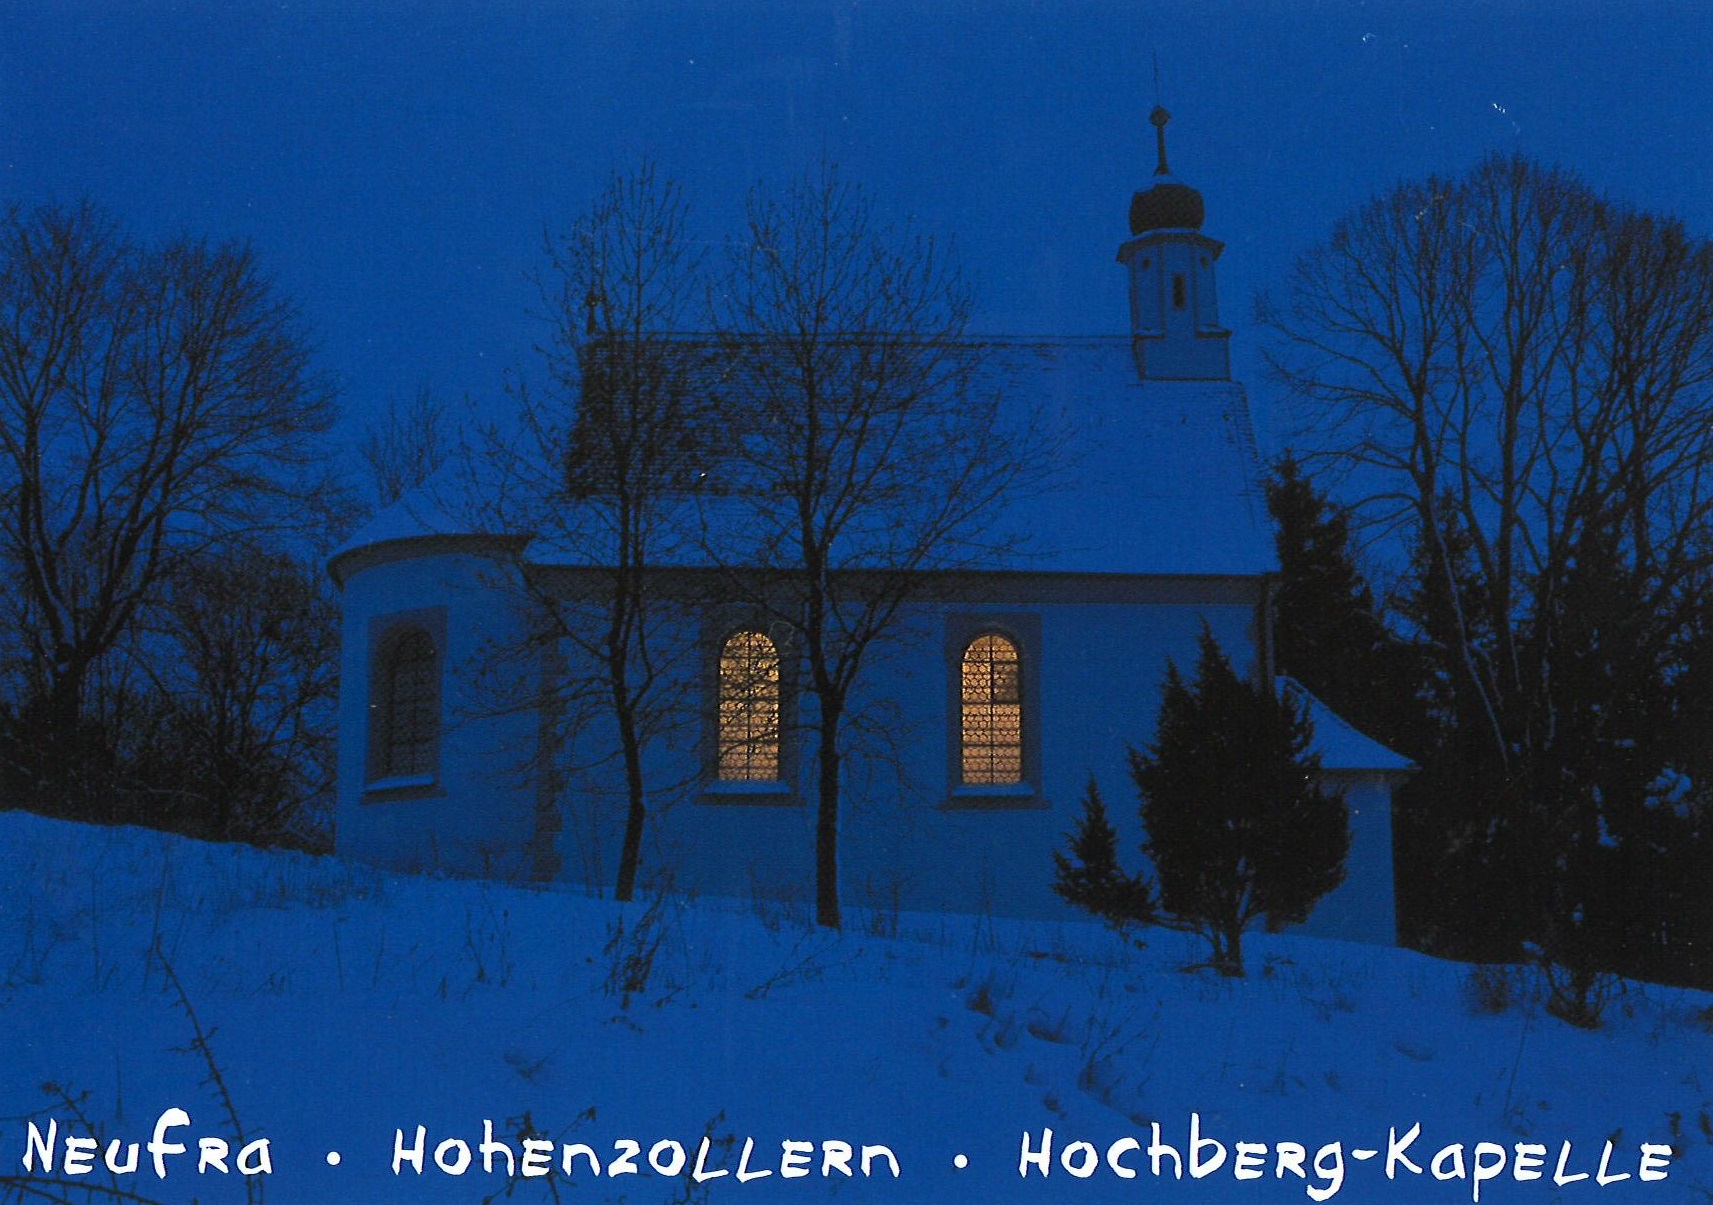                                                     Hochberg-Kapelle                                    